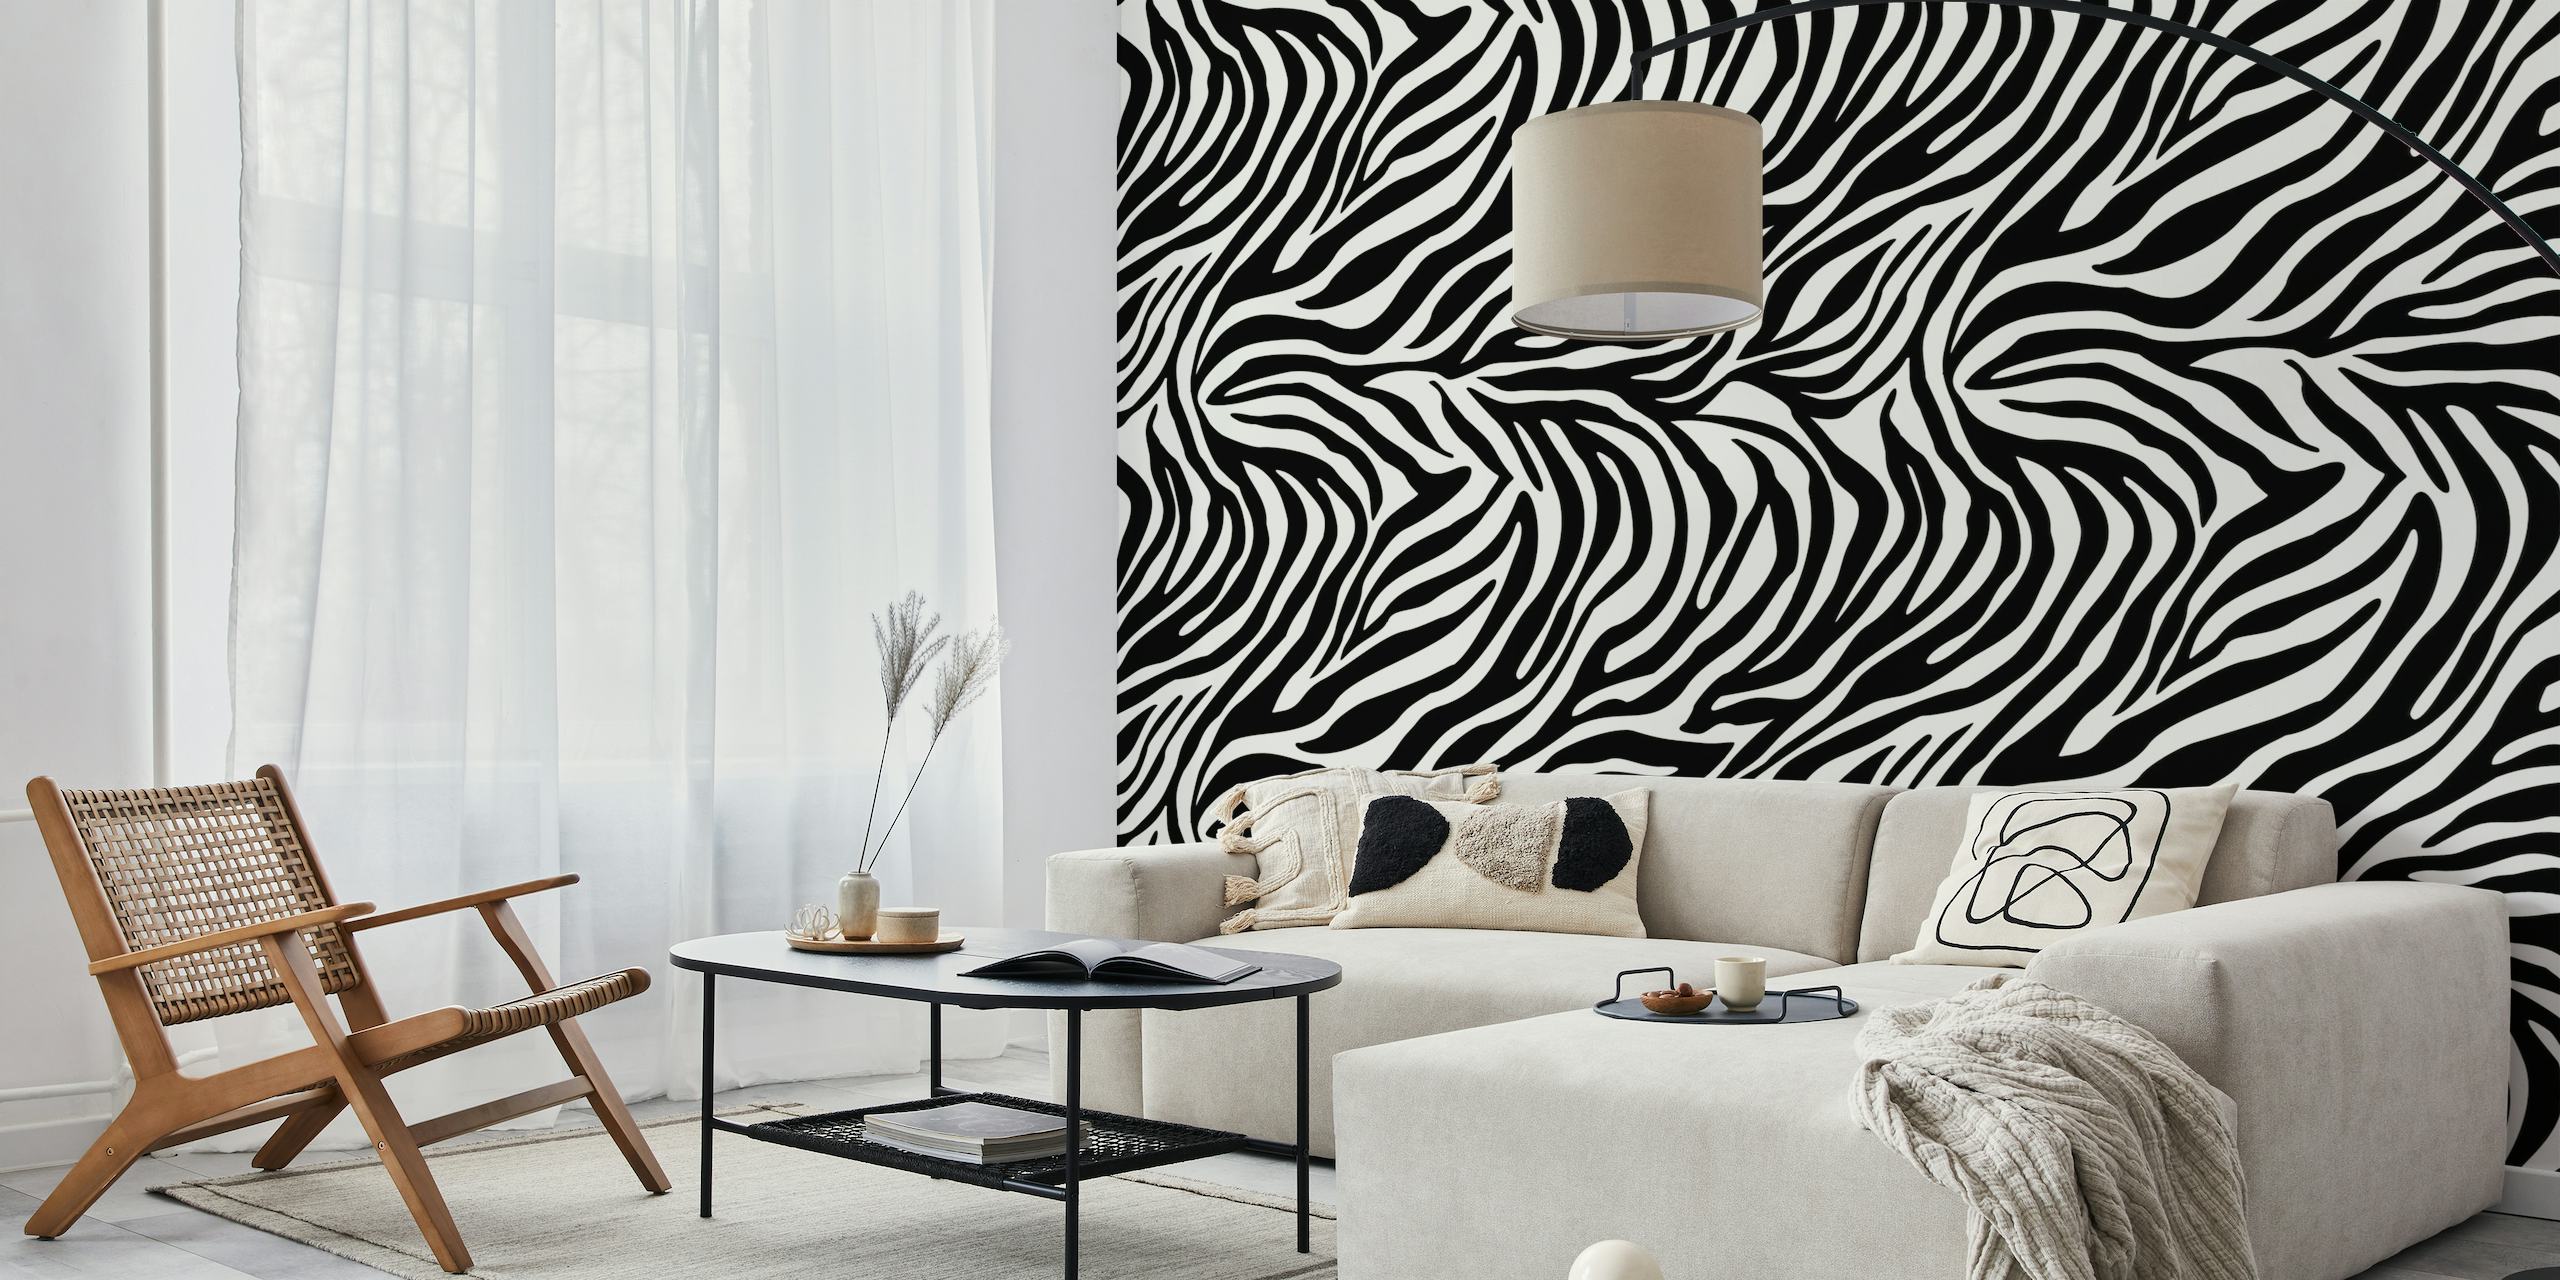 Zebra pattern III wallpaper